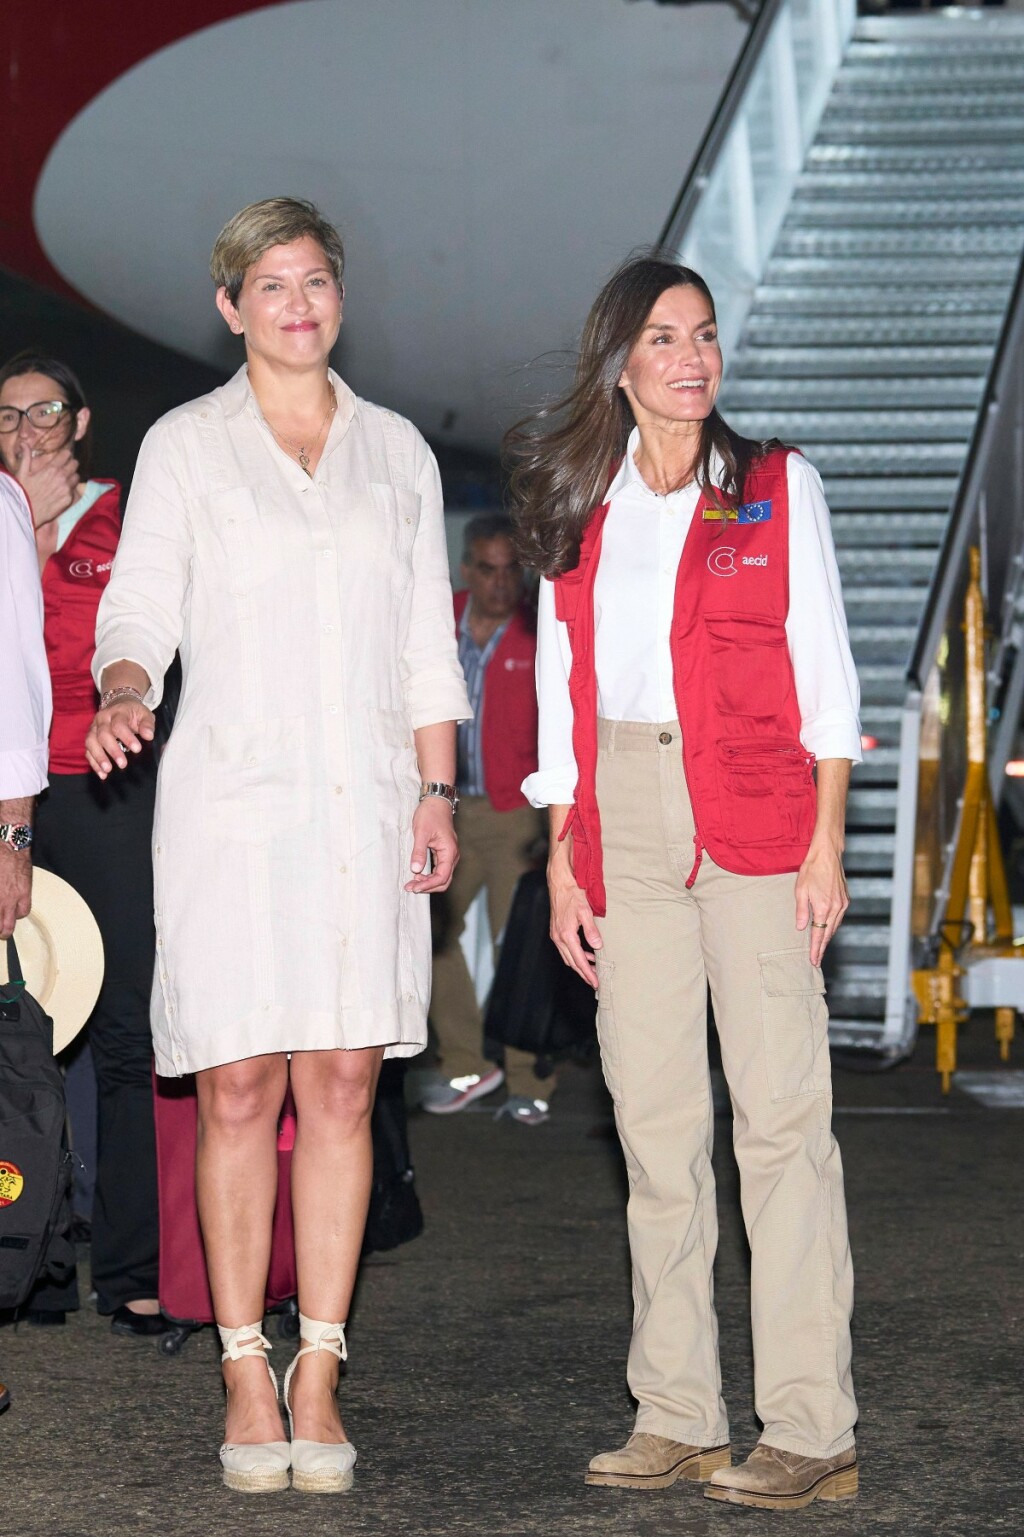 Kraljica Letizia i kolumbijska prva dama Verónica Alcocer